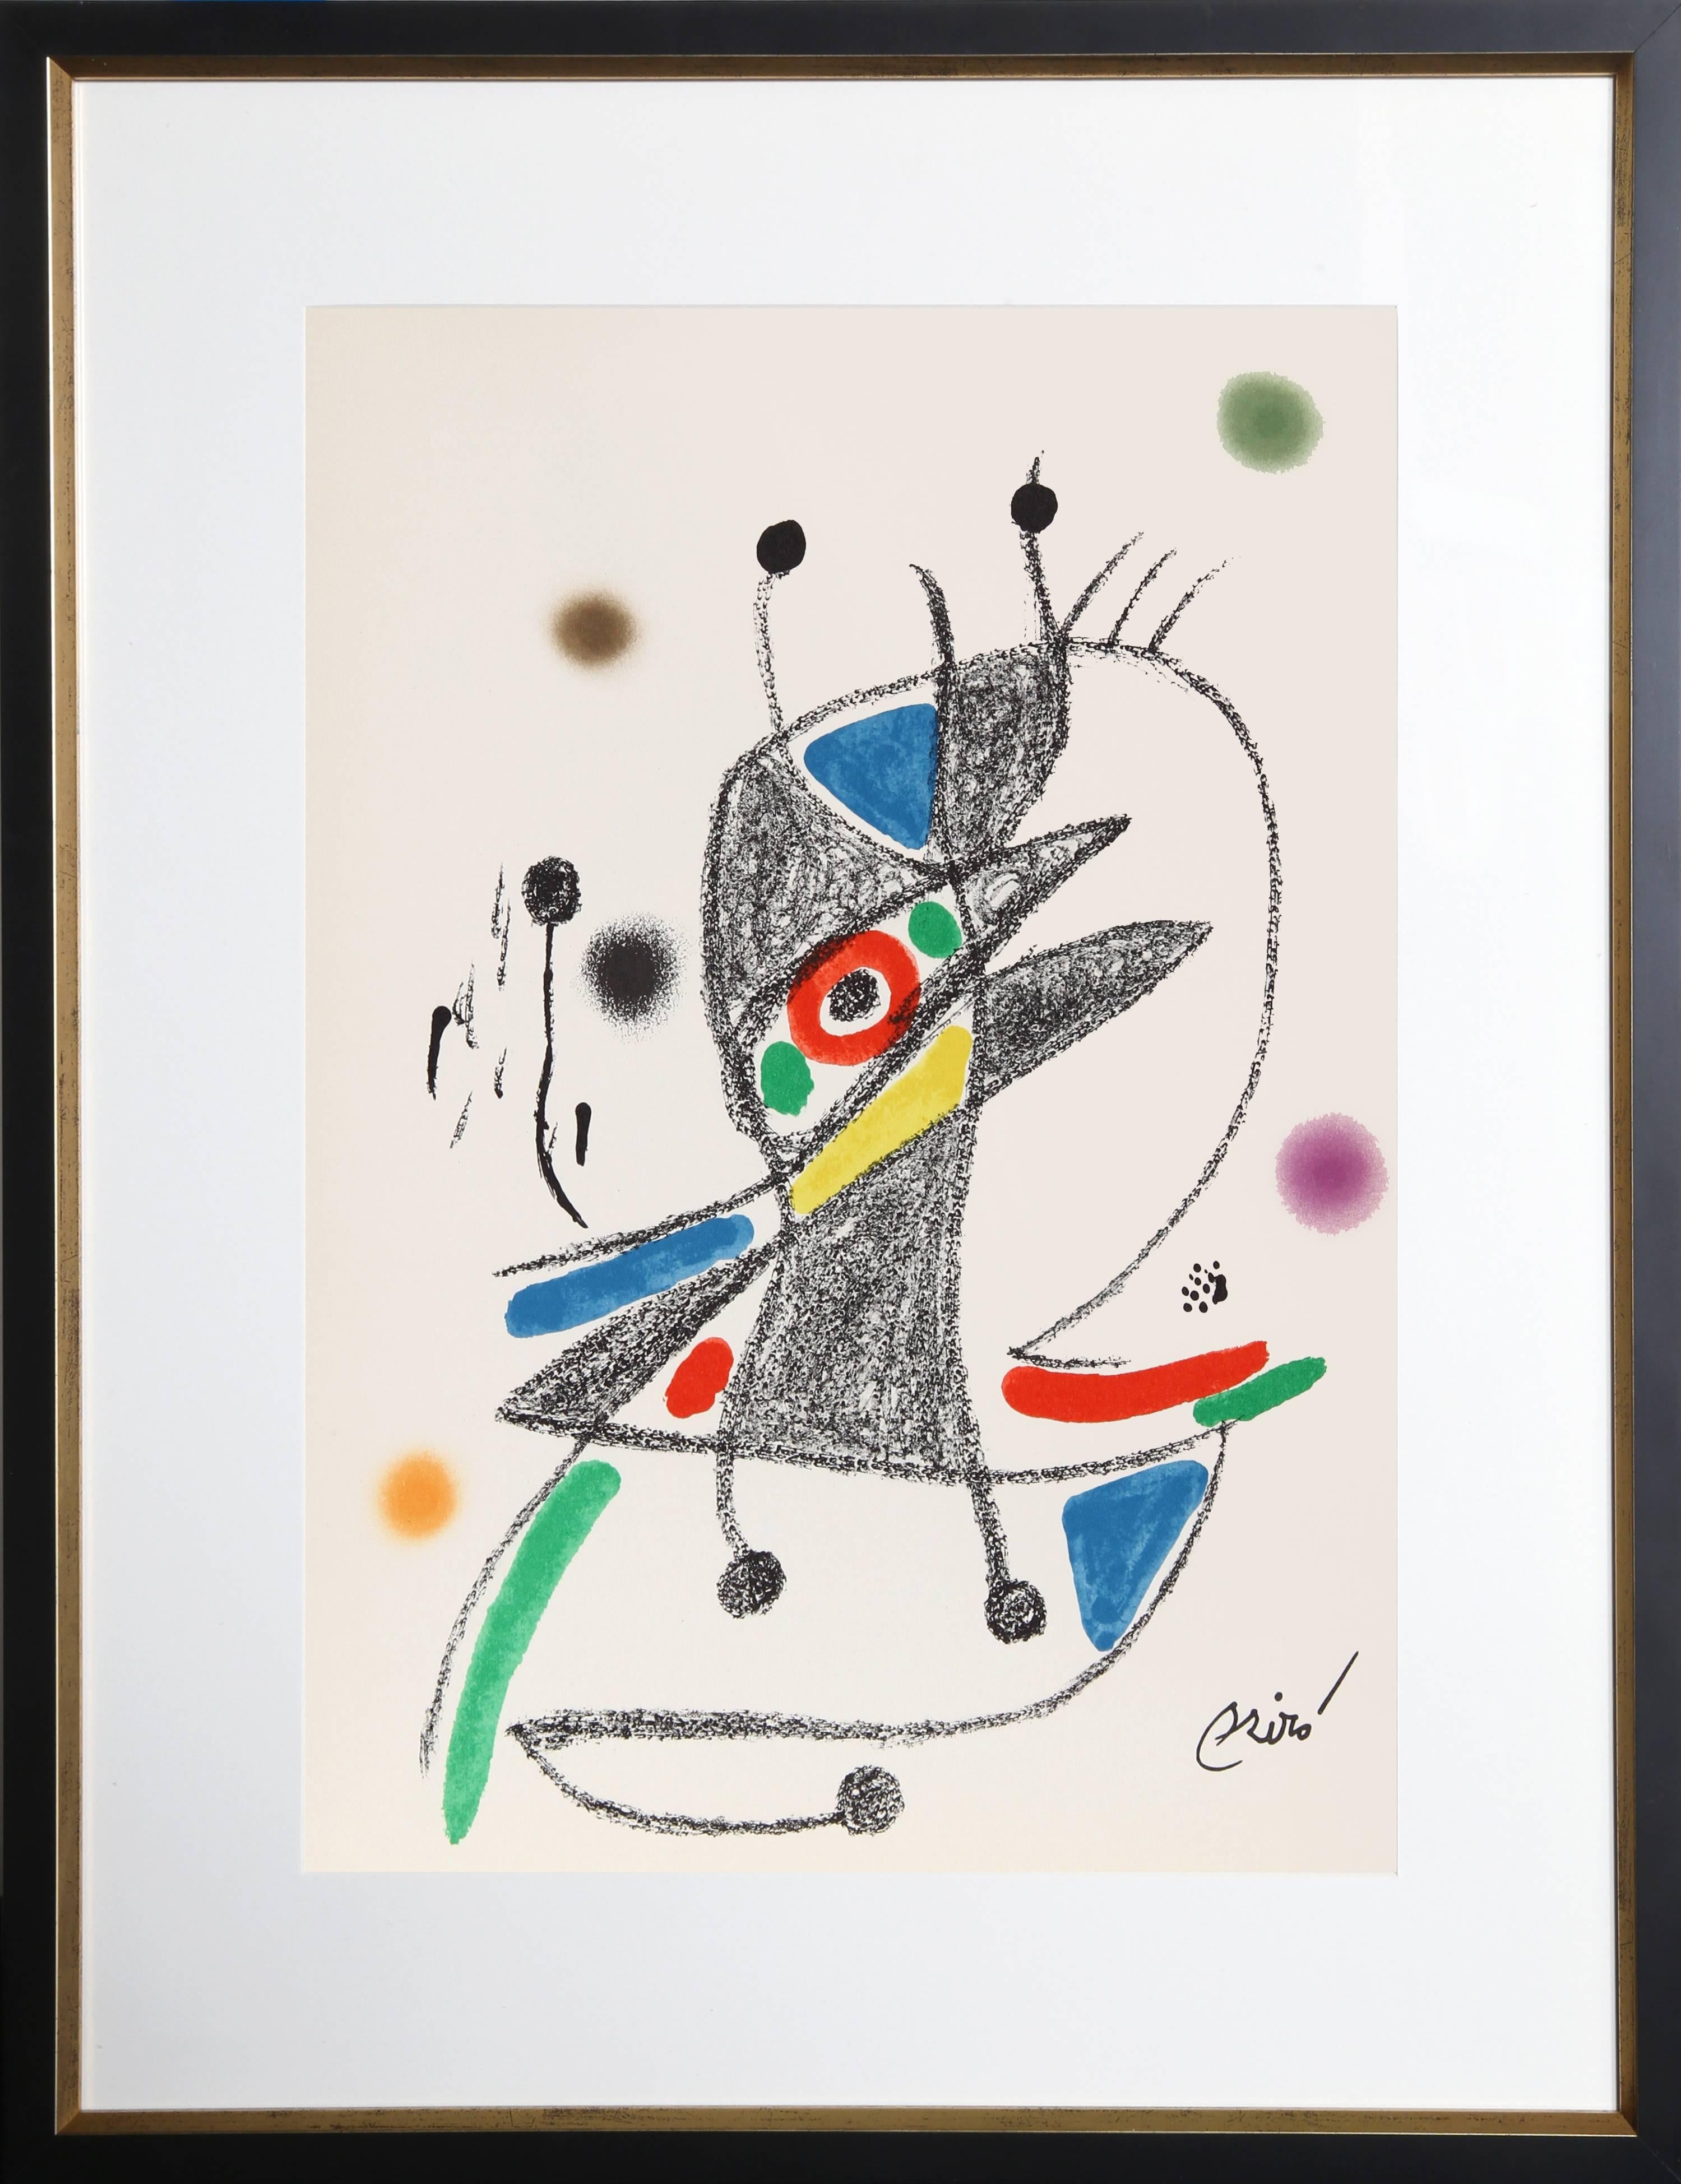 Joan Miró Abstract Print - Maravillas con Variaciones Acrosticas en el Jardin de Miro (Number 4)